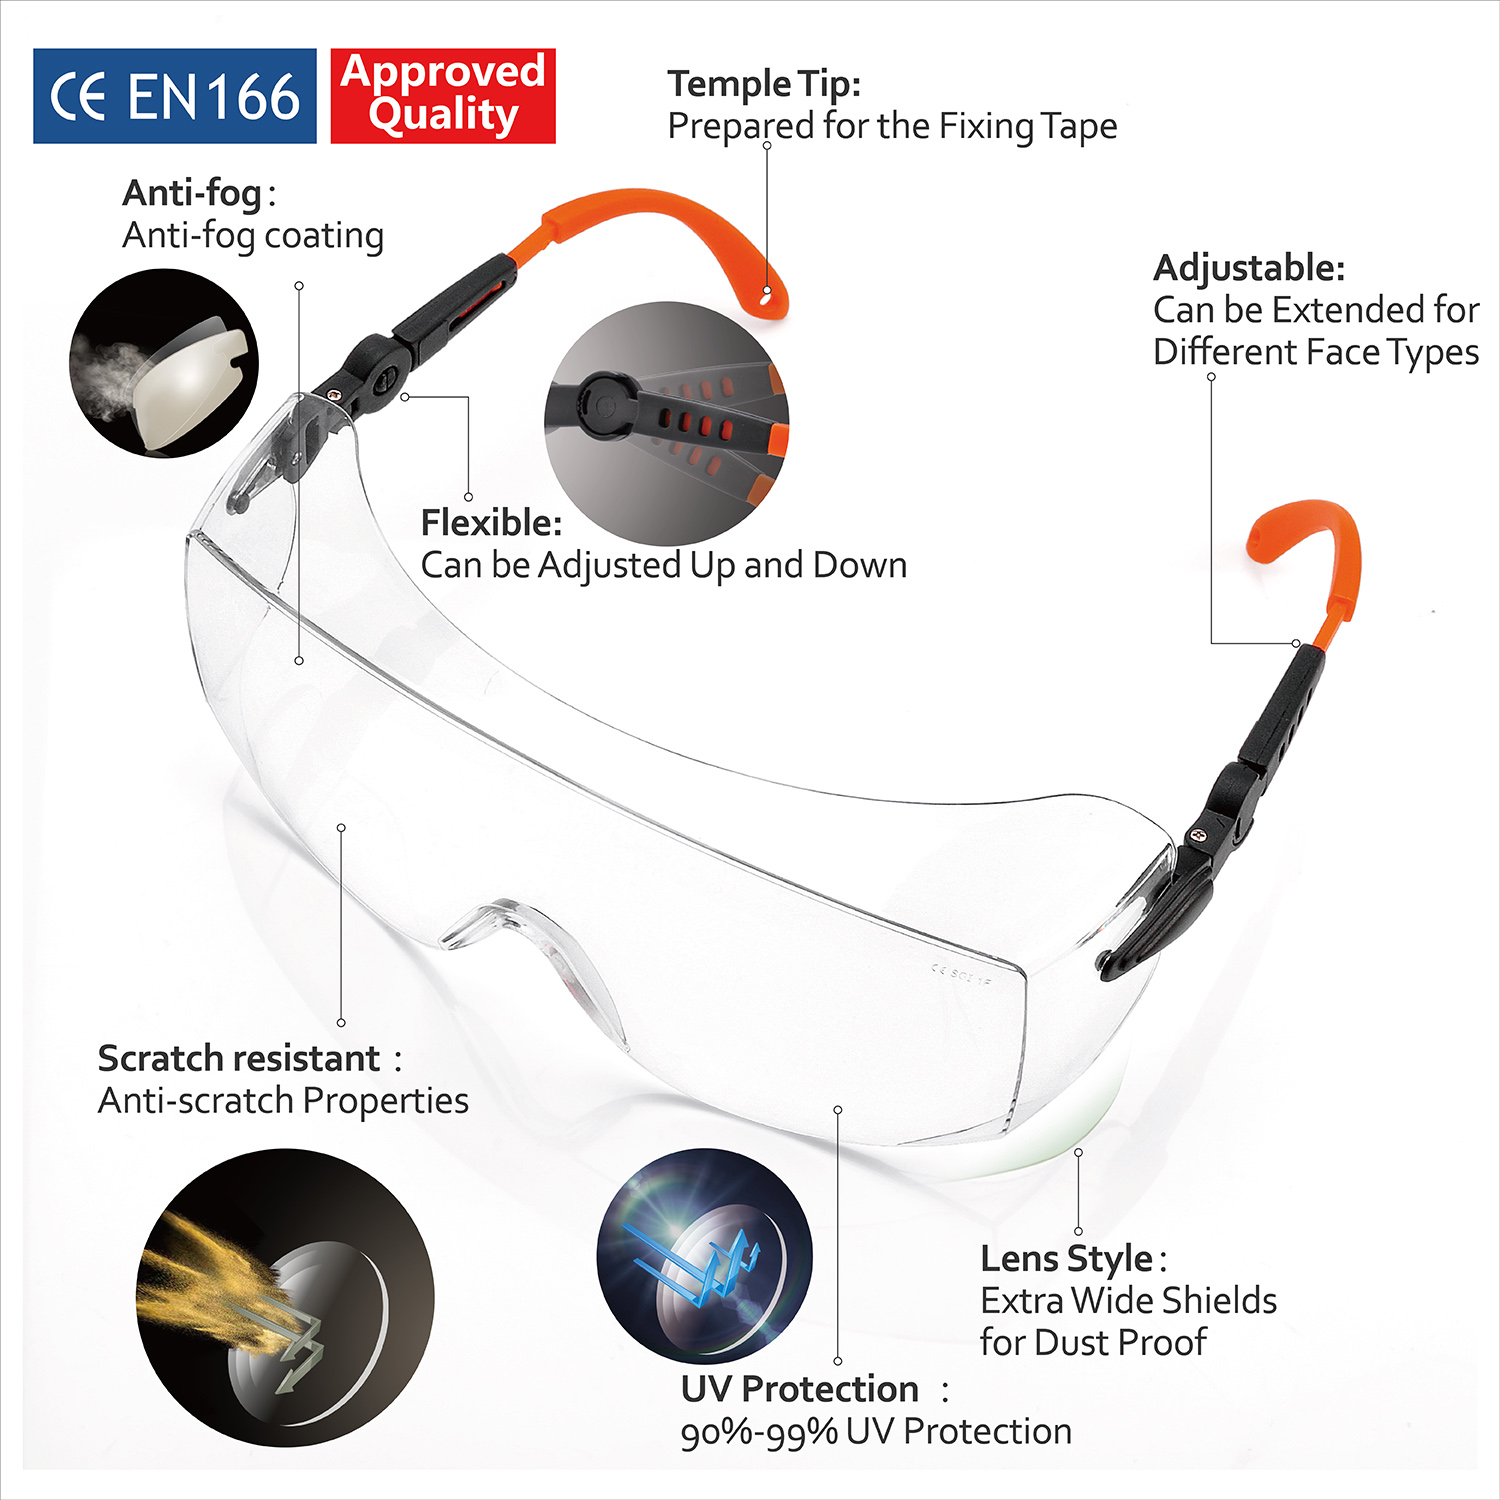 Sobre gafas Gafas de seguridad para trabajadores SG009